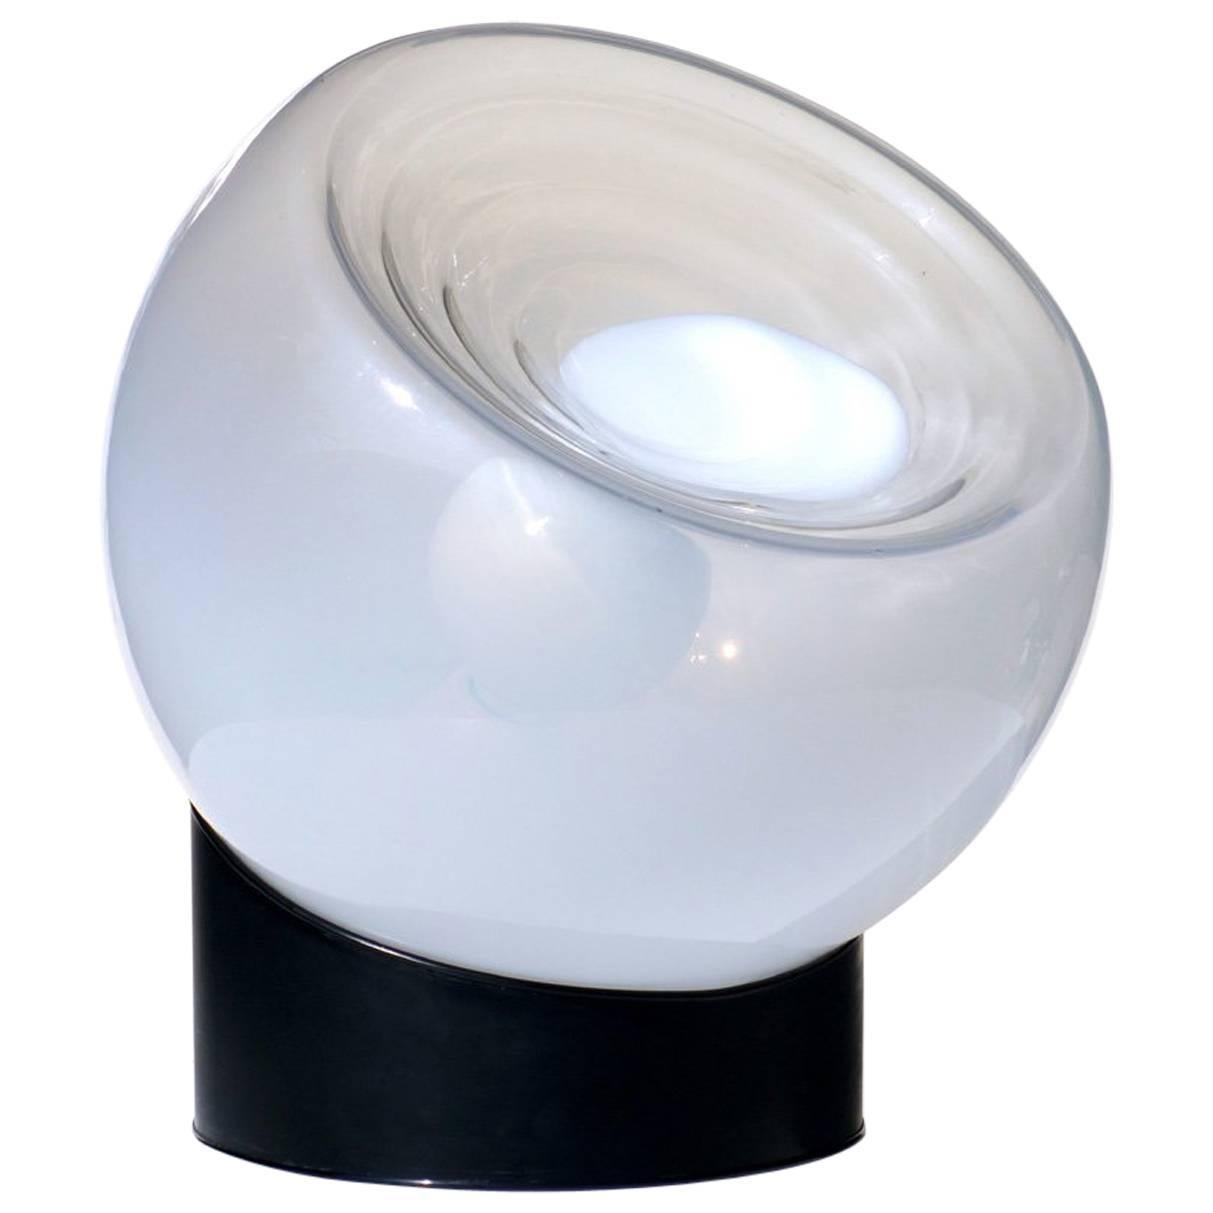 1960s Italian Design by Selenova Glass Table Lamp